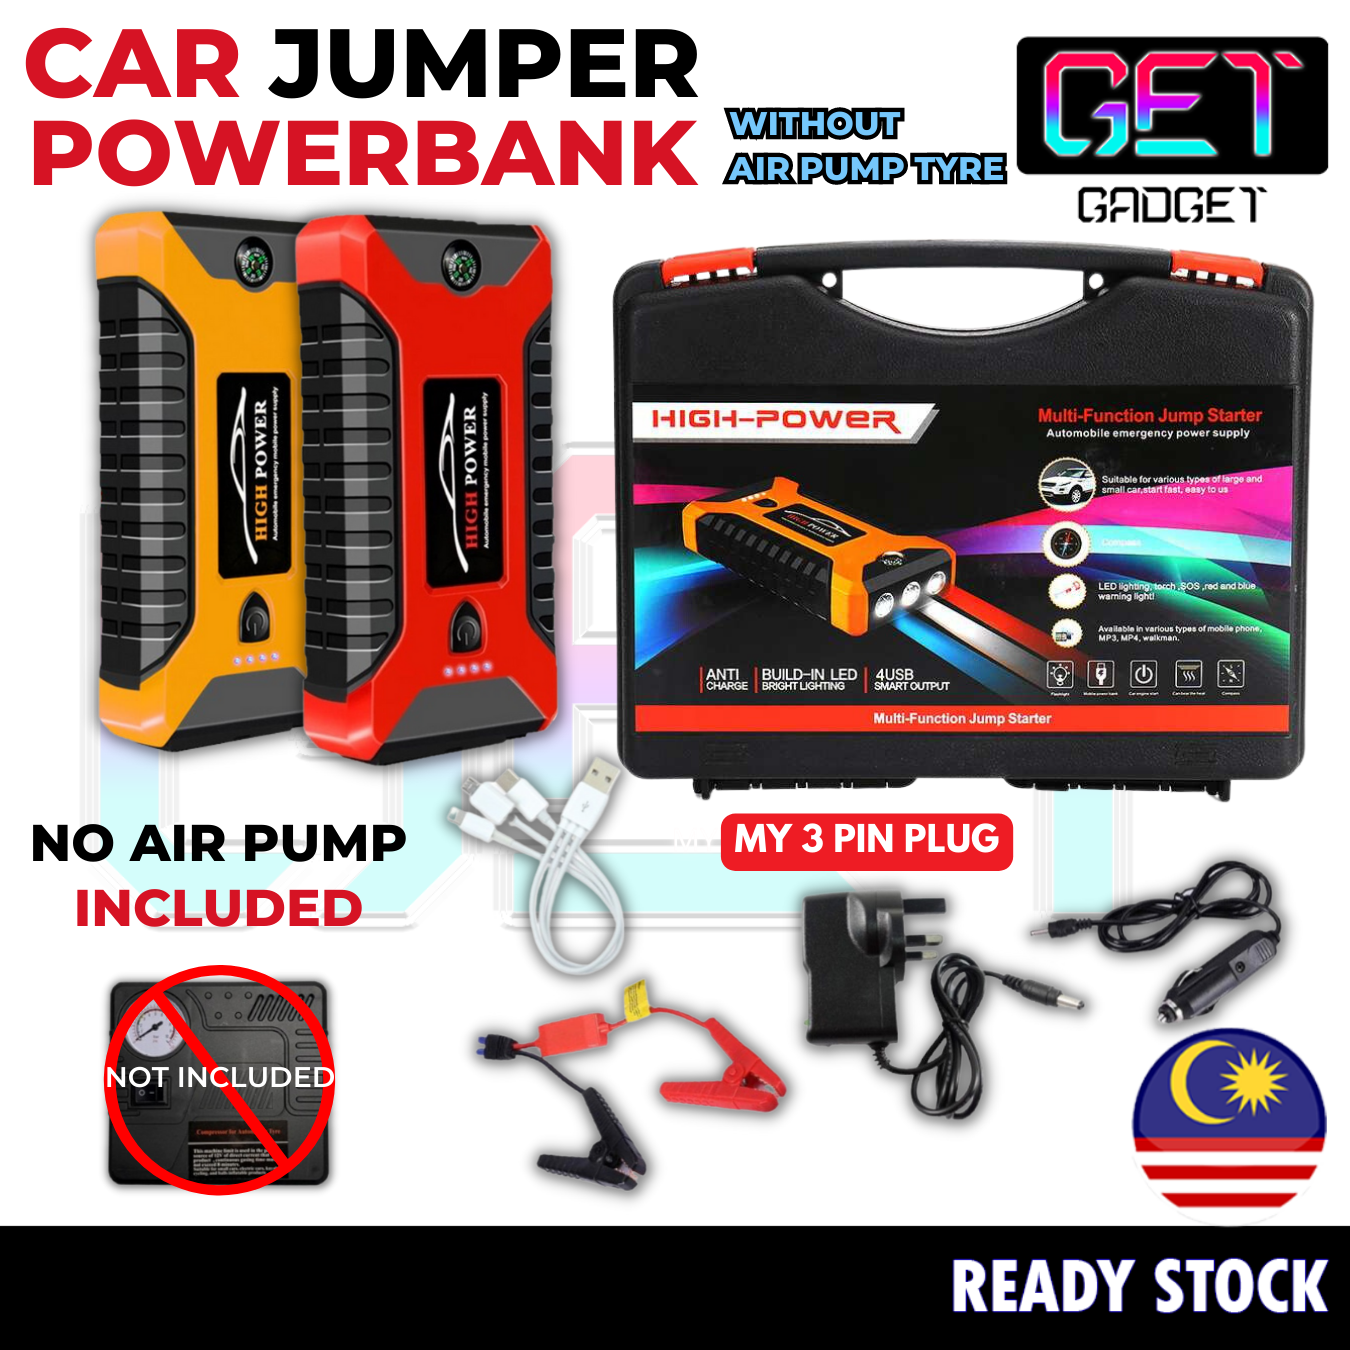 Get Gadget⚙ 99800mAh 12V Car Jumper Car Powerbank Car Tyre Air